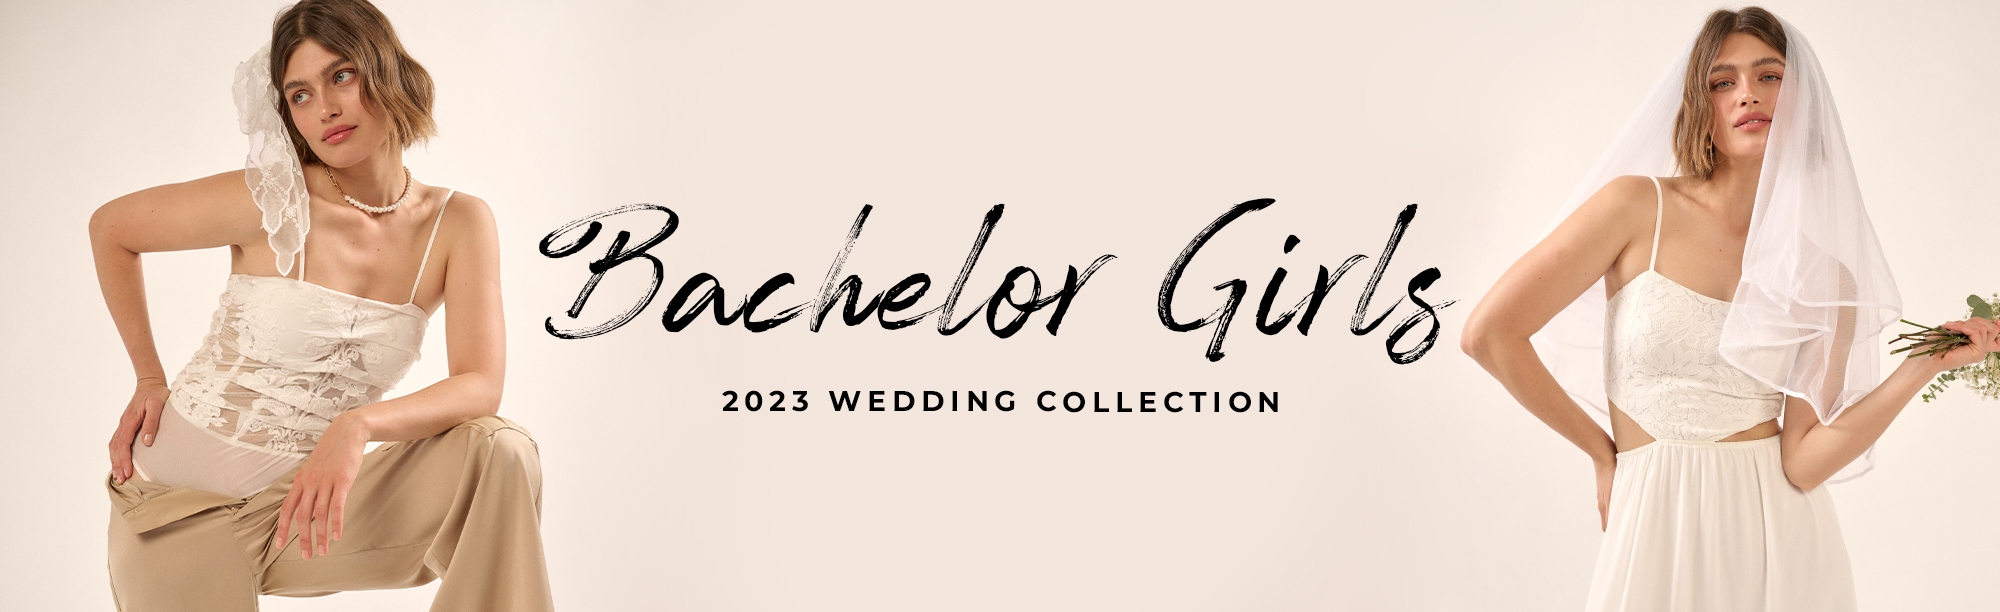 Bachelor Girls - Weddings 2023